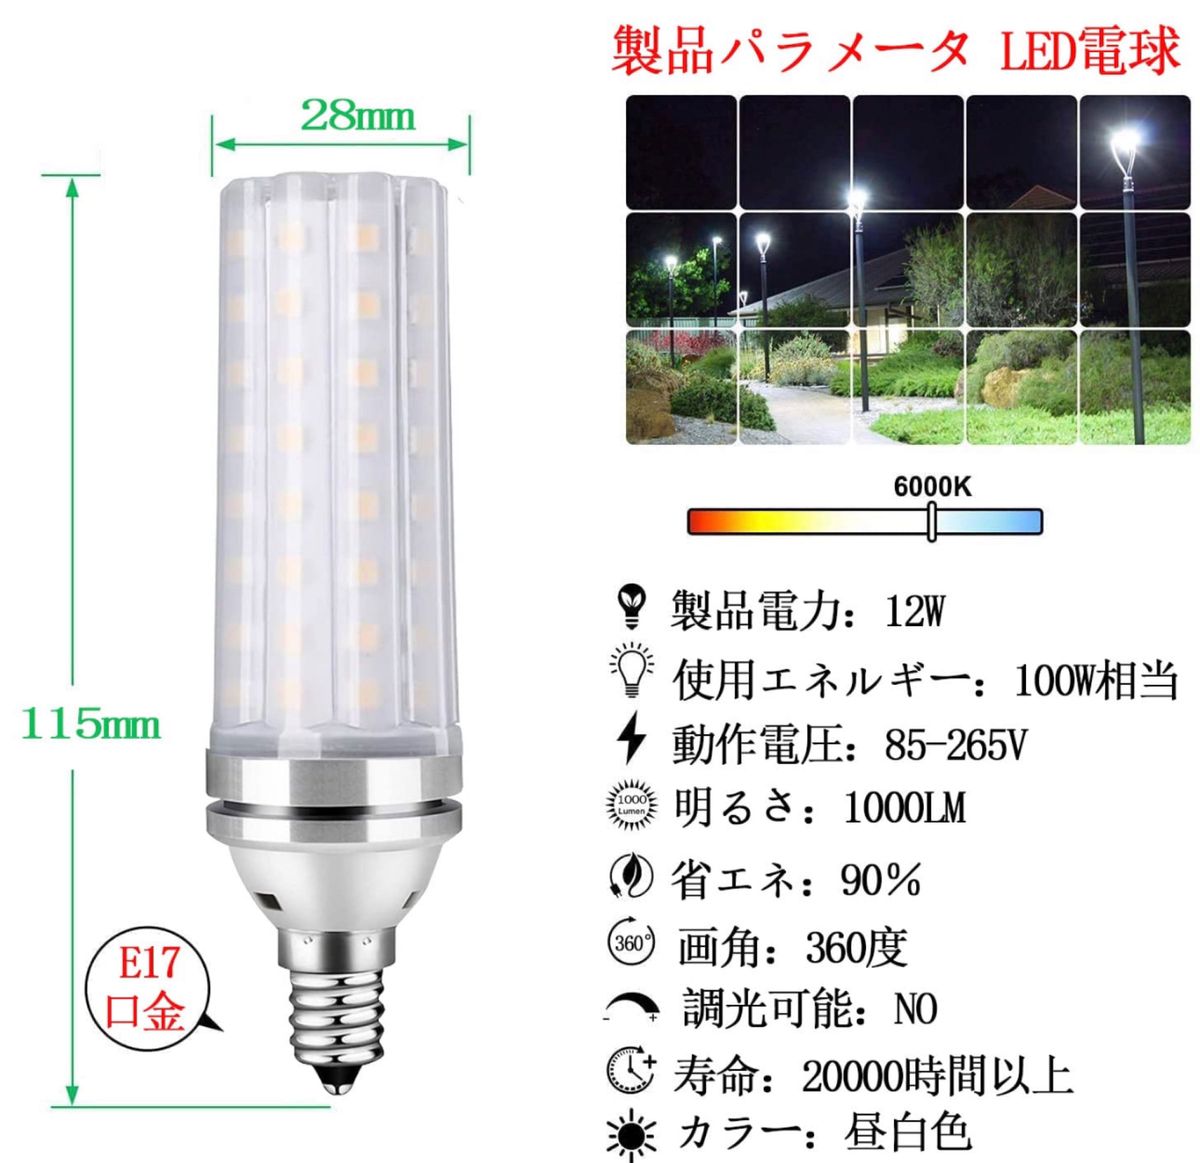 LED電球 100W形相当 12W 昼白色 6000K E17口金 直径17mm 1000LM 高輝度 360°全方向タイプ高演色